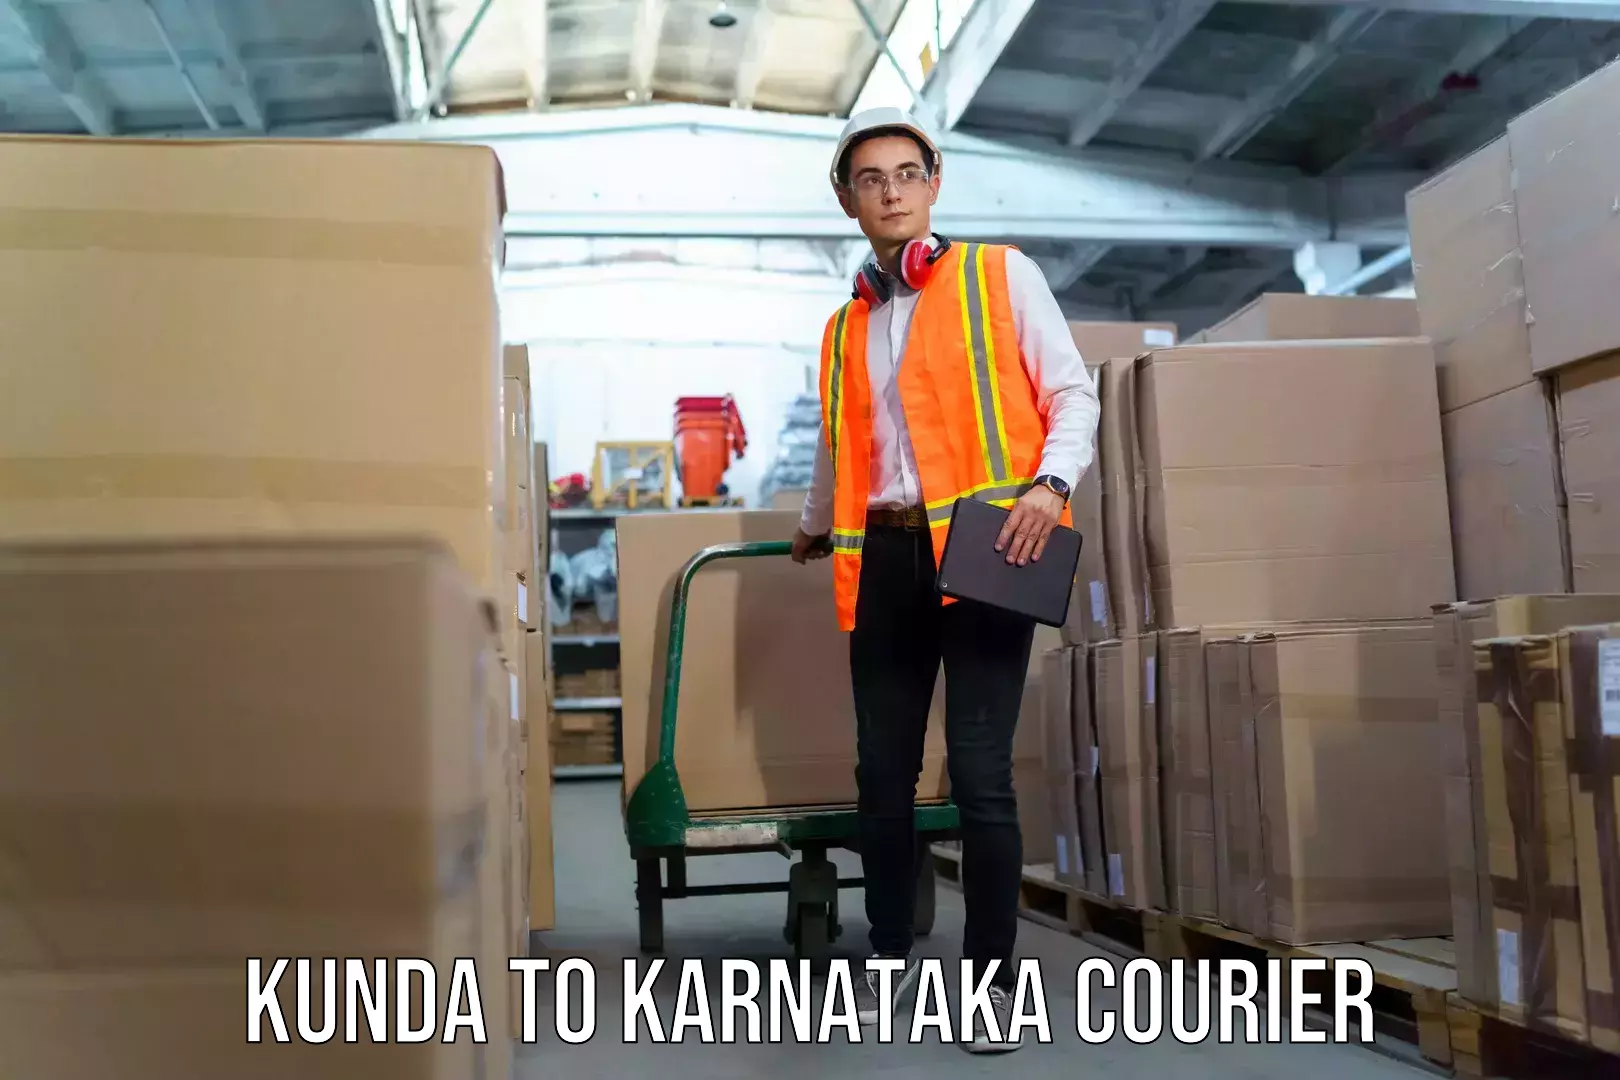 Baggage transport scheduler Kunda to Karnataka